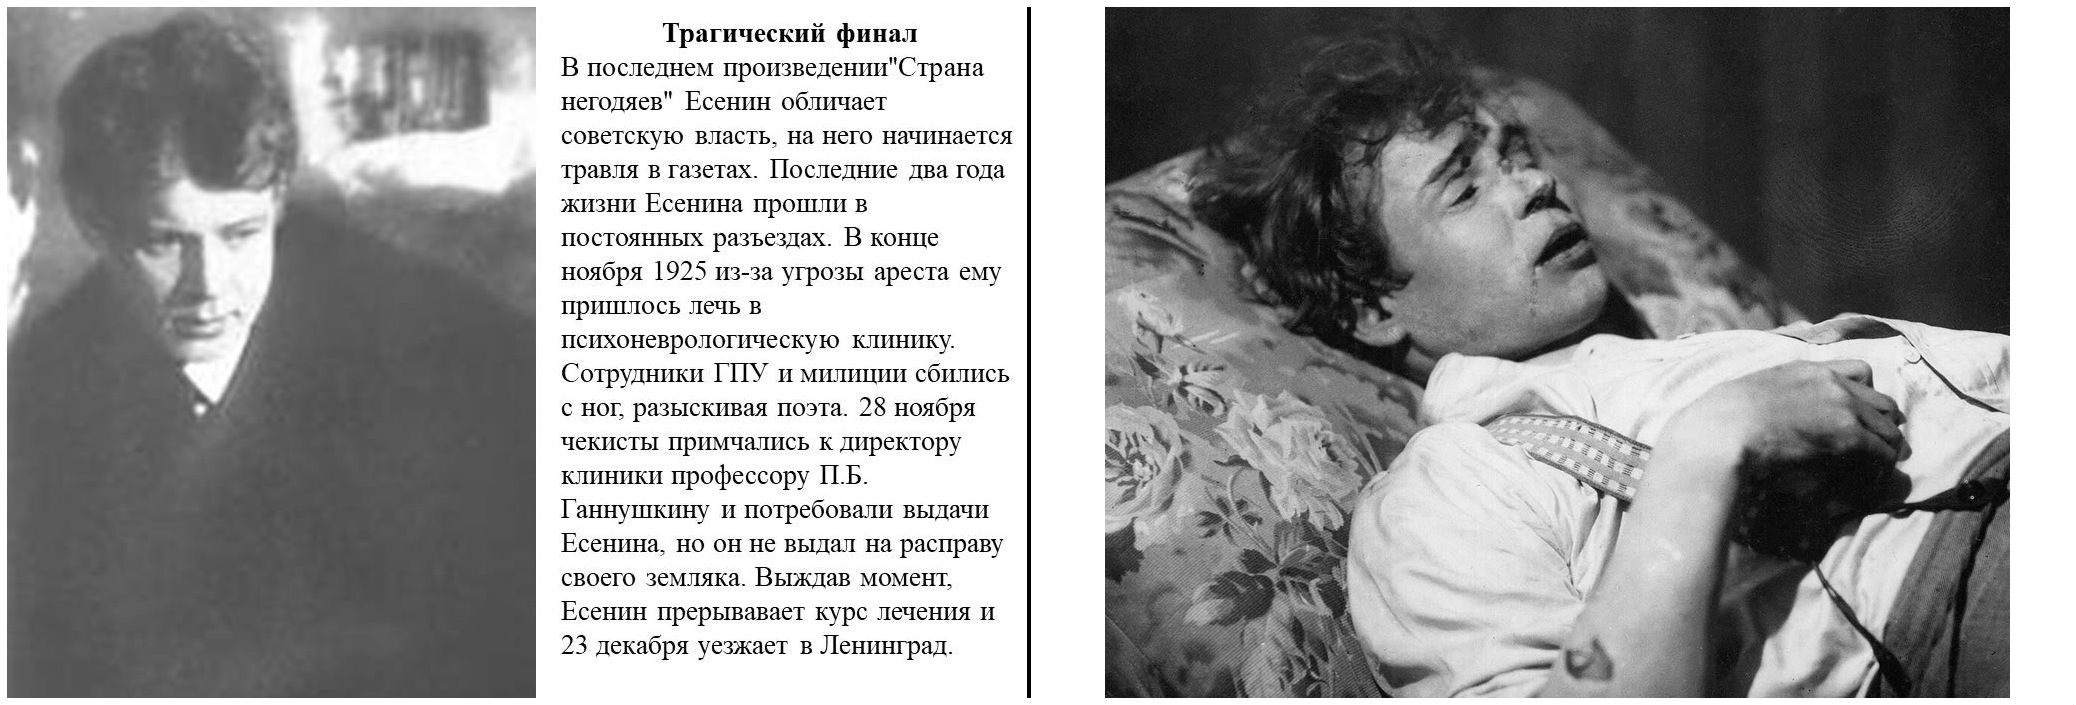 Русский поэт покончивший собой в гостинице